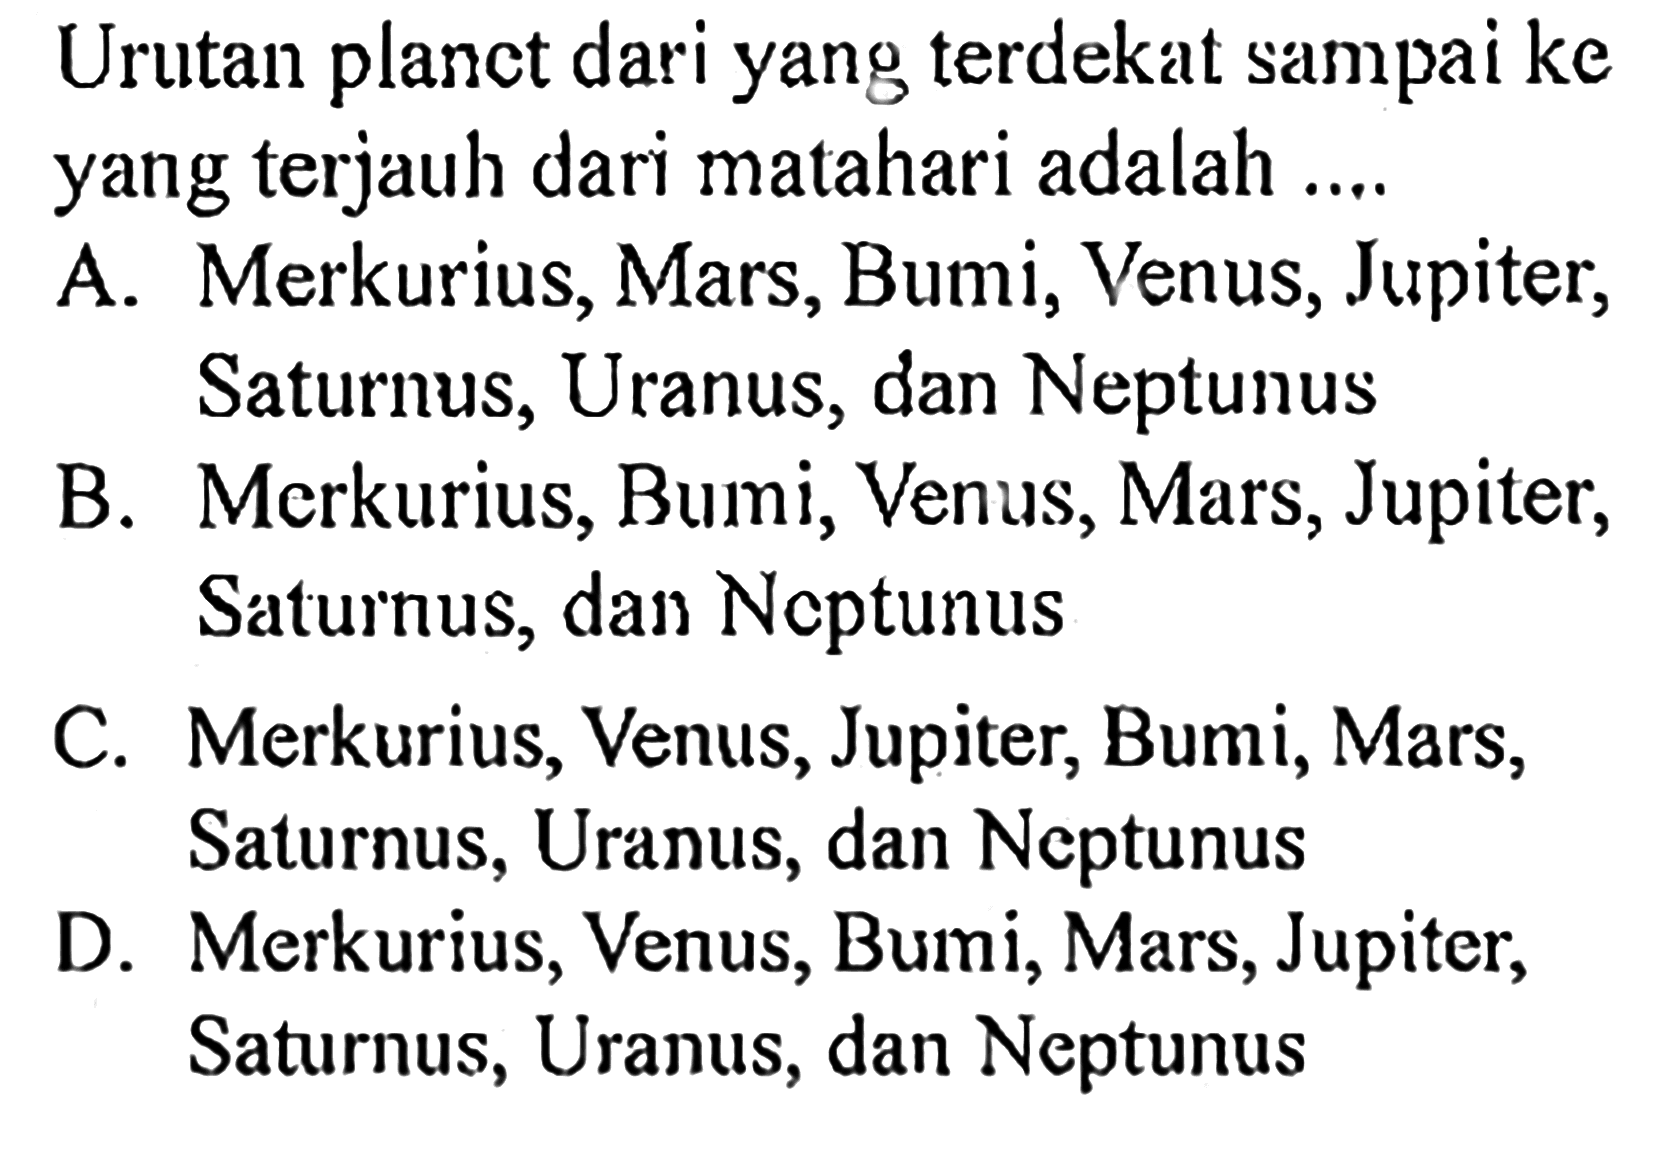 Urutan planet dari yang terdekat sampai ke yang terjauh dari matahari adalah .... A. Merkurius, Mars, Bumi, Venus, Jupiter, Saturnus, Uranus, dan NeptunusB. Merkurius, Bumi, Venus, Mars, Jupiter, Saturnus, dan NeptunusC. Merkurius, Venus, Jupiter, Bumi, Mars, Saturnus, Uranus, dan NeptunusD. Merkurius, Venus, Bumi, Mars, Jupiter, Saturnus, Uranus, dan Neptunus